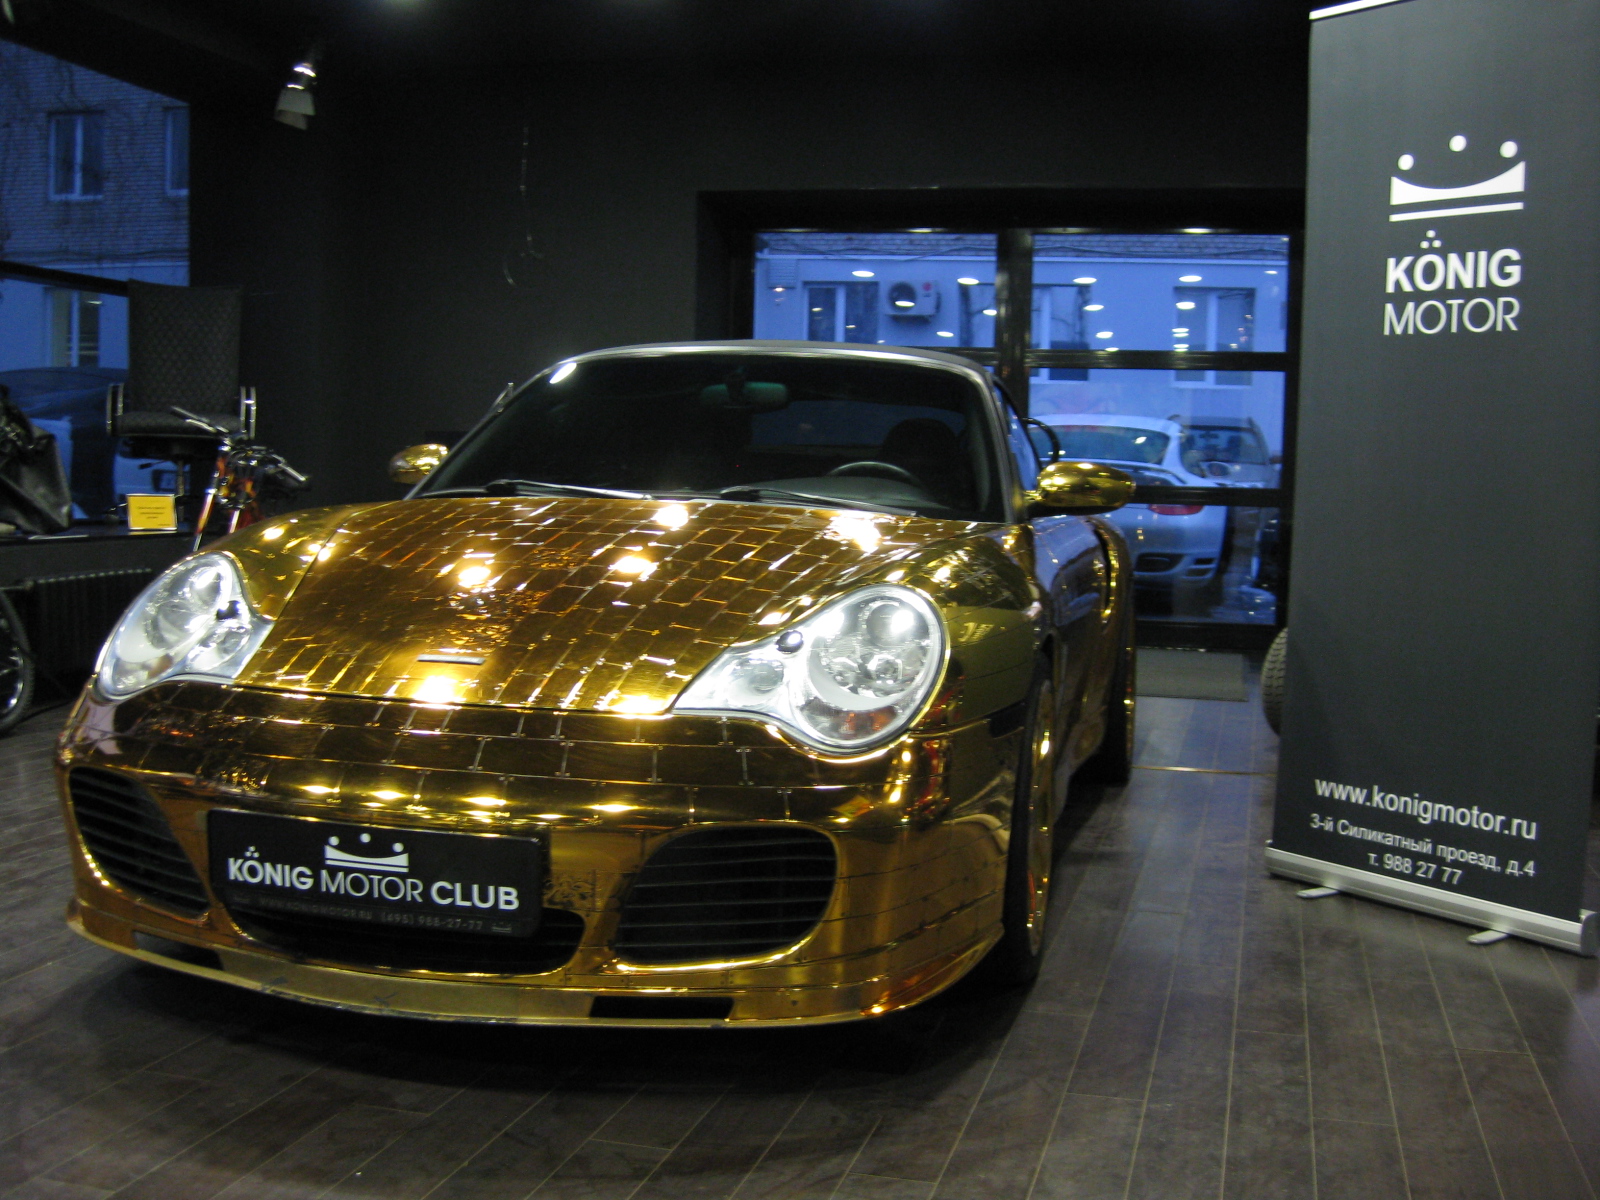 Wereldberoemde gouden Porsche 996 Turbo Cabriolet staat te koop